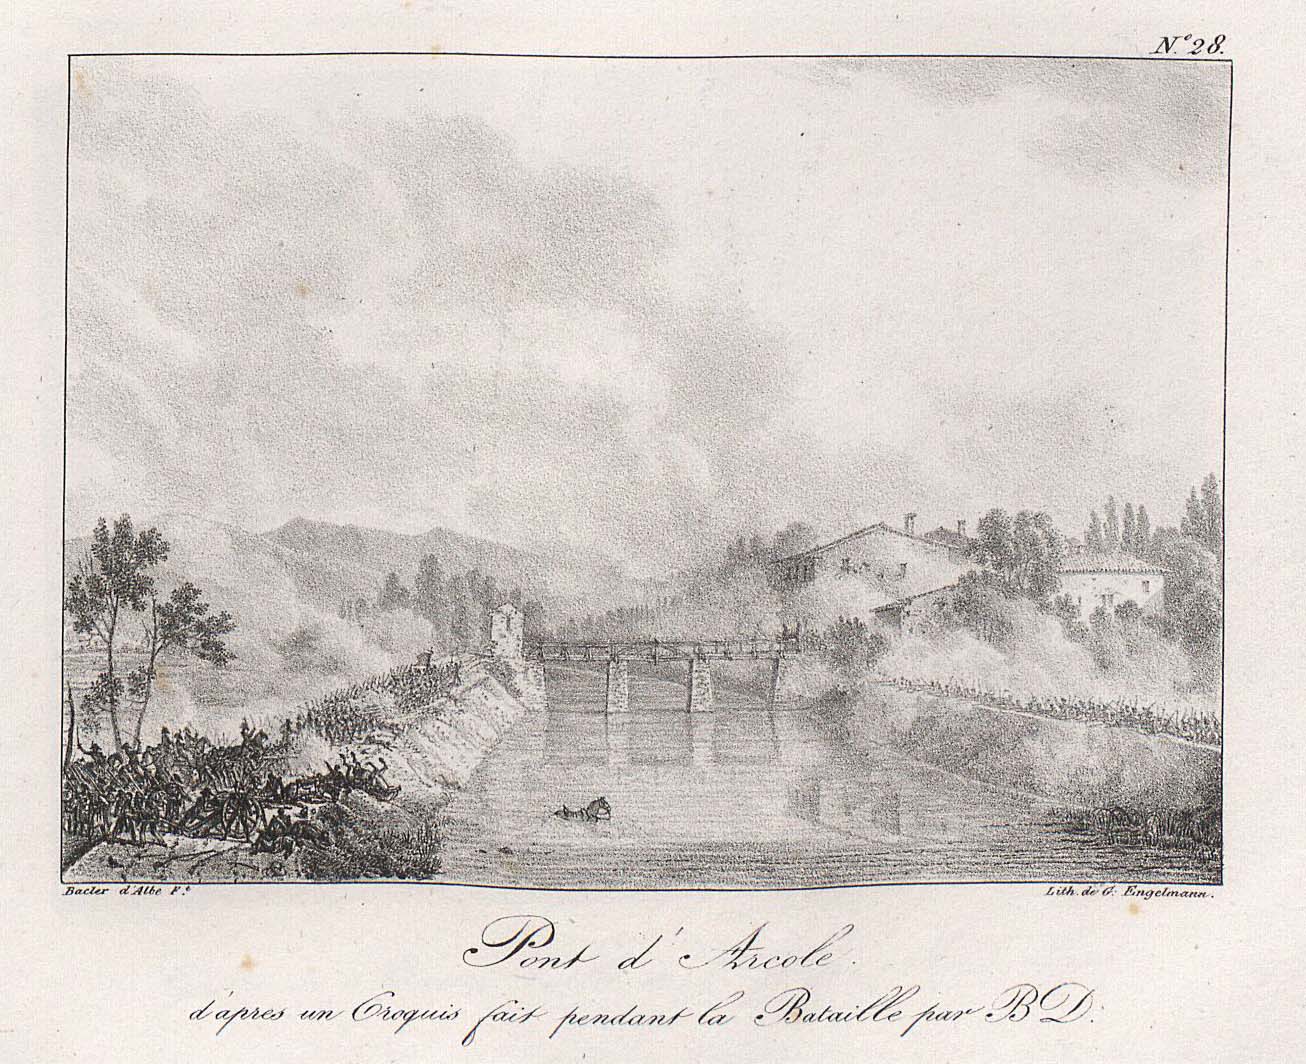 Pont d'Arcole d'après un croquis fait pendant la bataille par B.D.